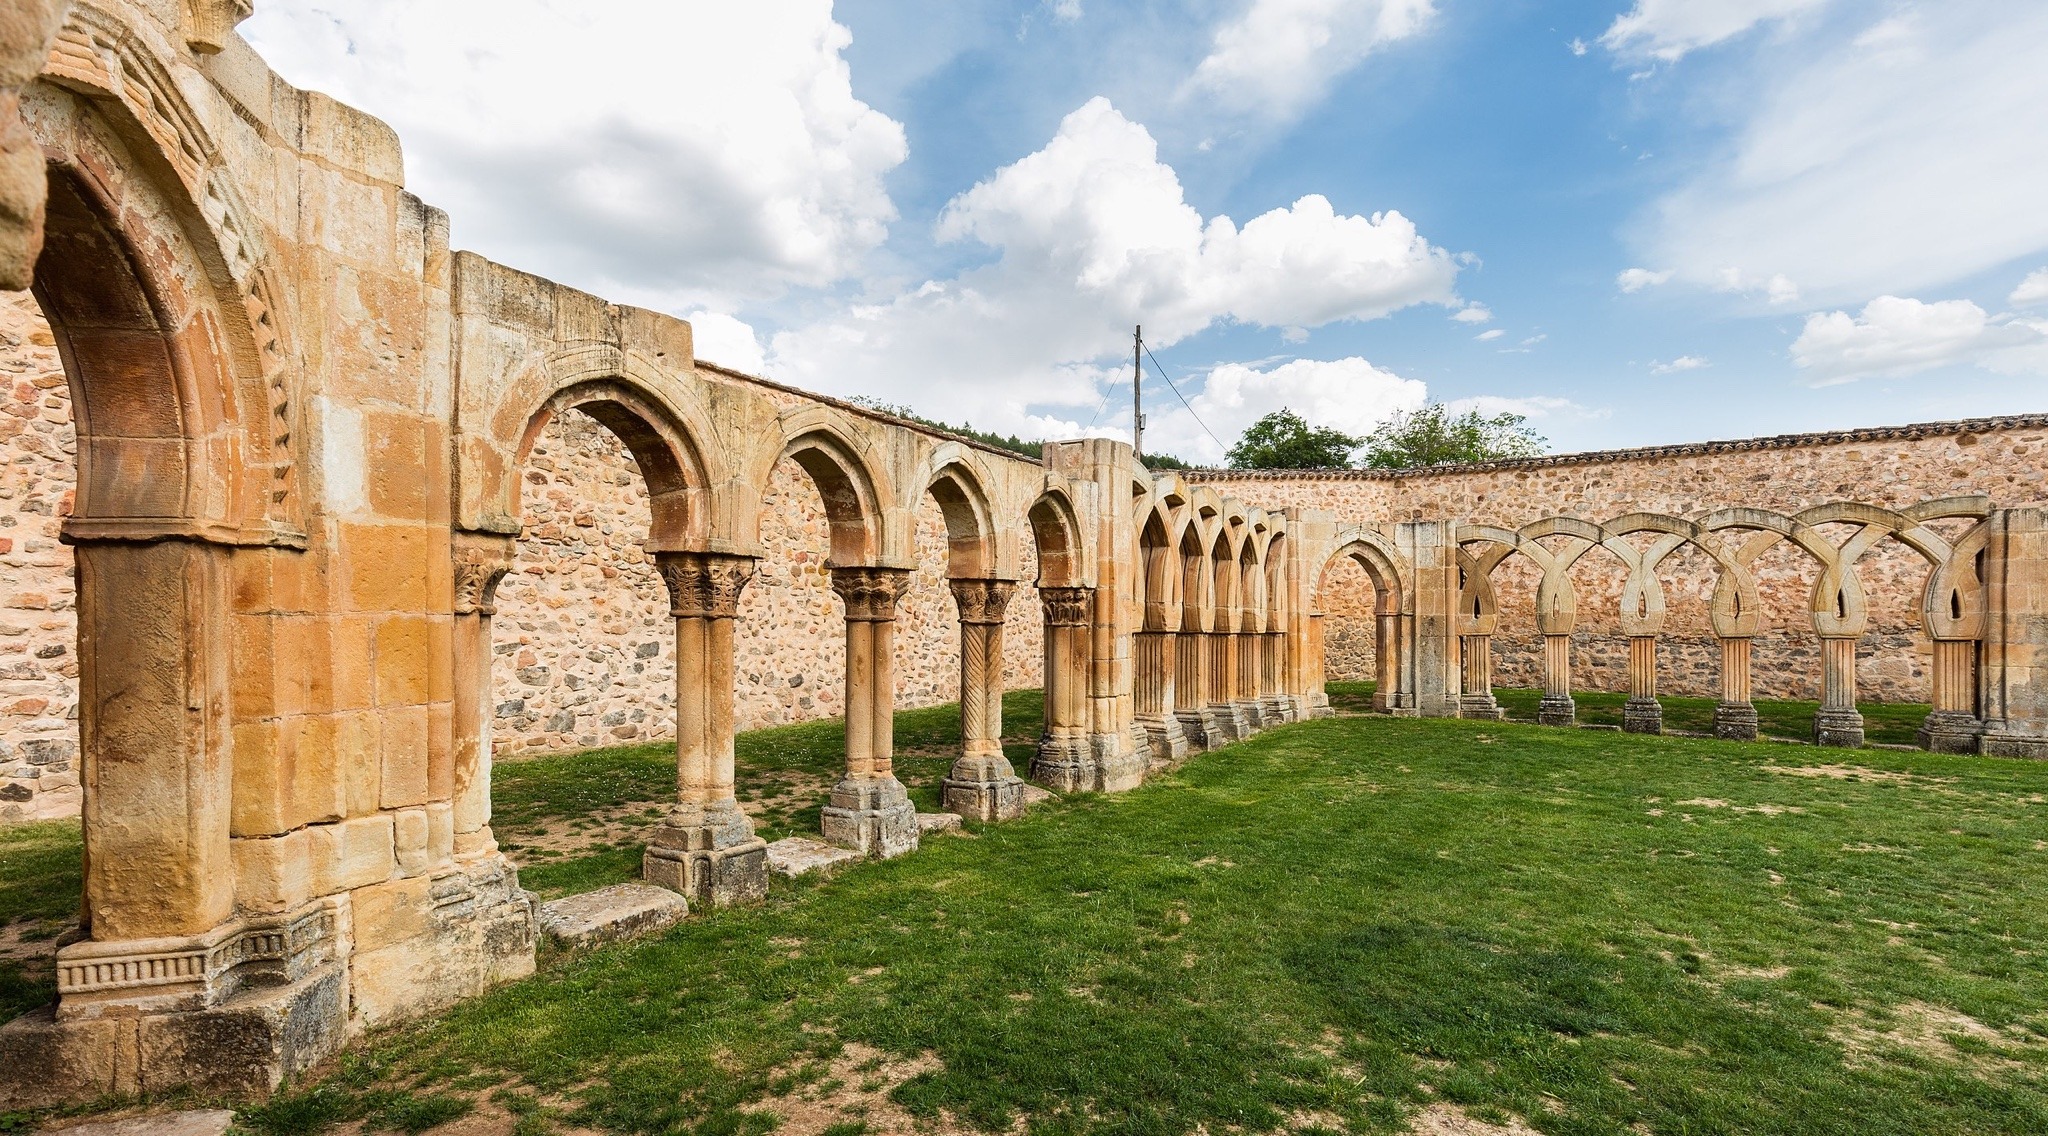 m1male2:Monasterio de Juan de Duero #Soria #España, uno de los conjuntos más significativos del románico castellano. Sólo se conservan la iglesia y las arquerías del claustro. Desde la 2ª mitad del s.XII en posesión de la Orden de los Caballeros